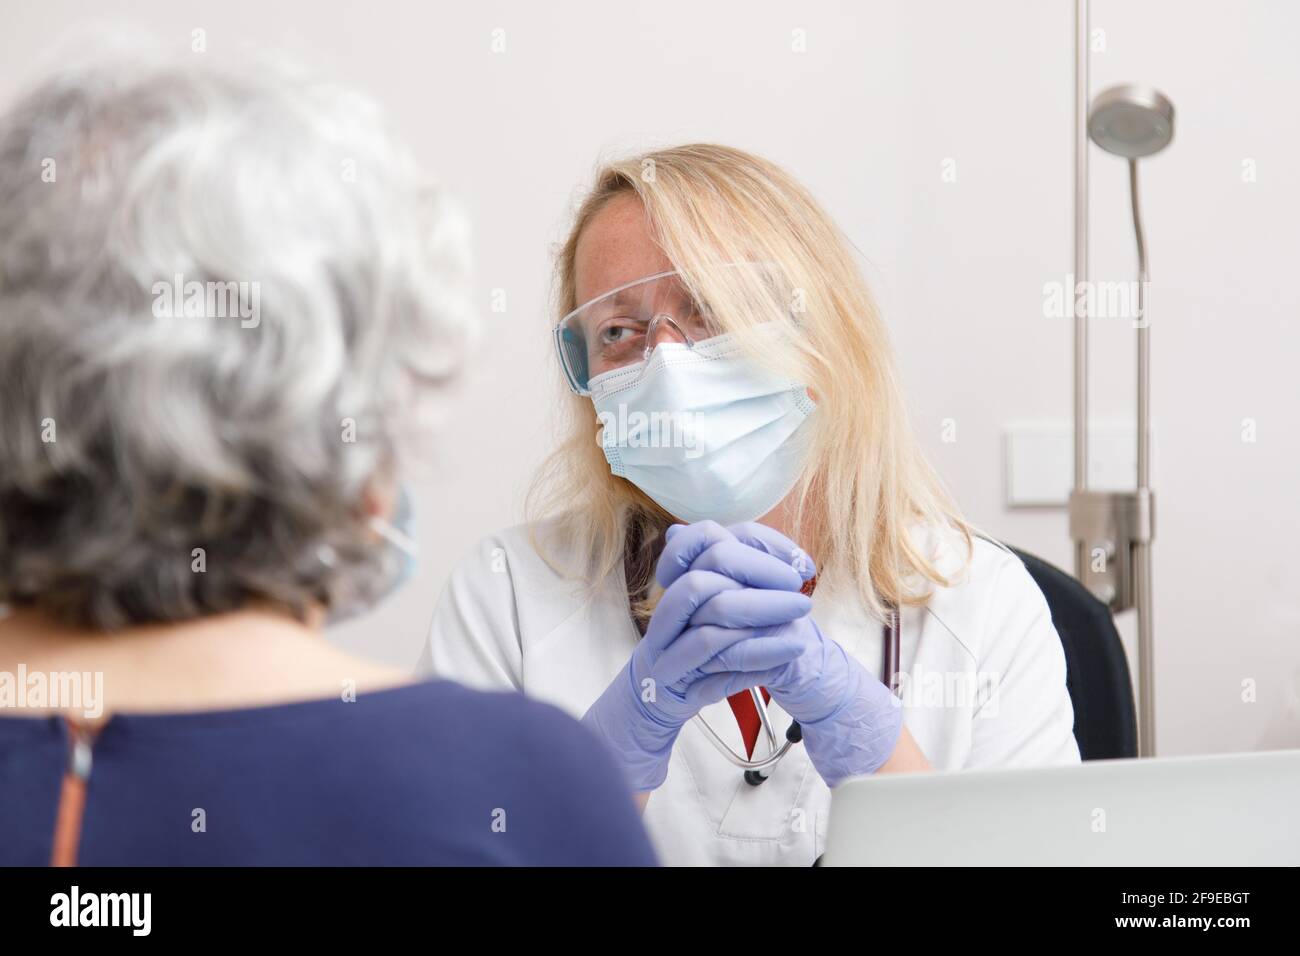 Femme médecin traitant une patiente dans son bureau médical Banque D'Images